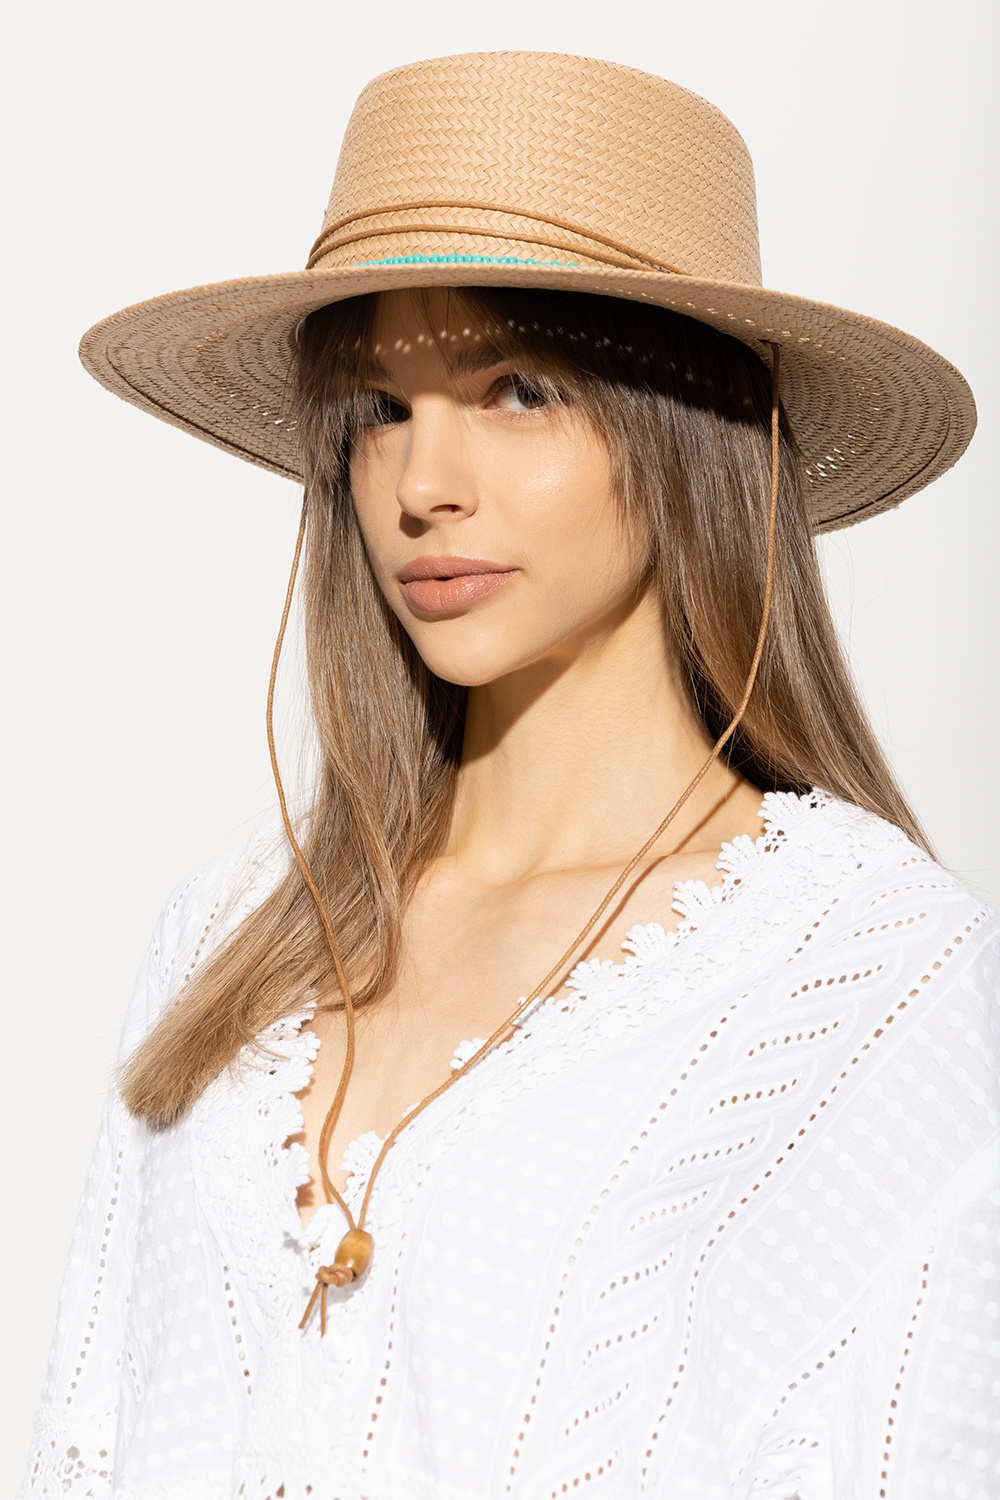 Melissa Odabash ‘Gisele’ boater hat